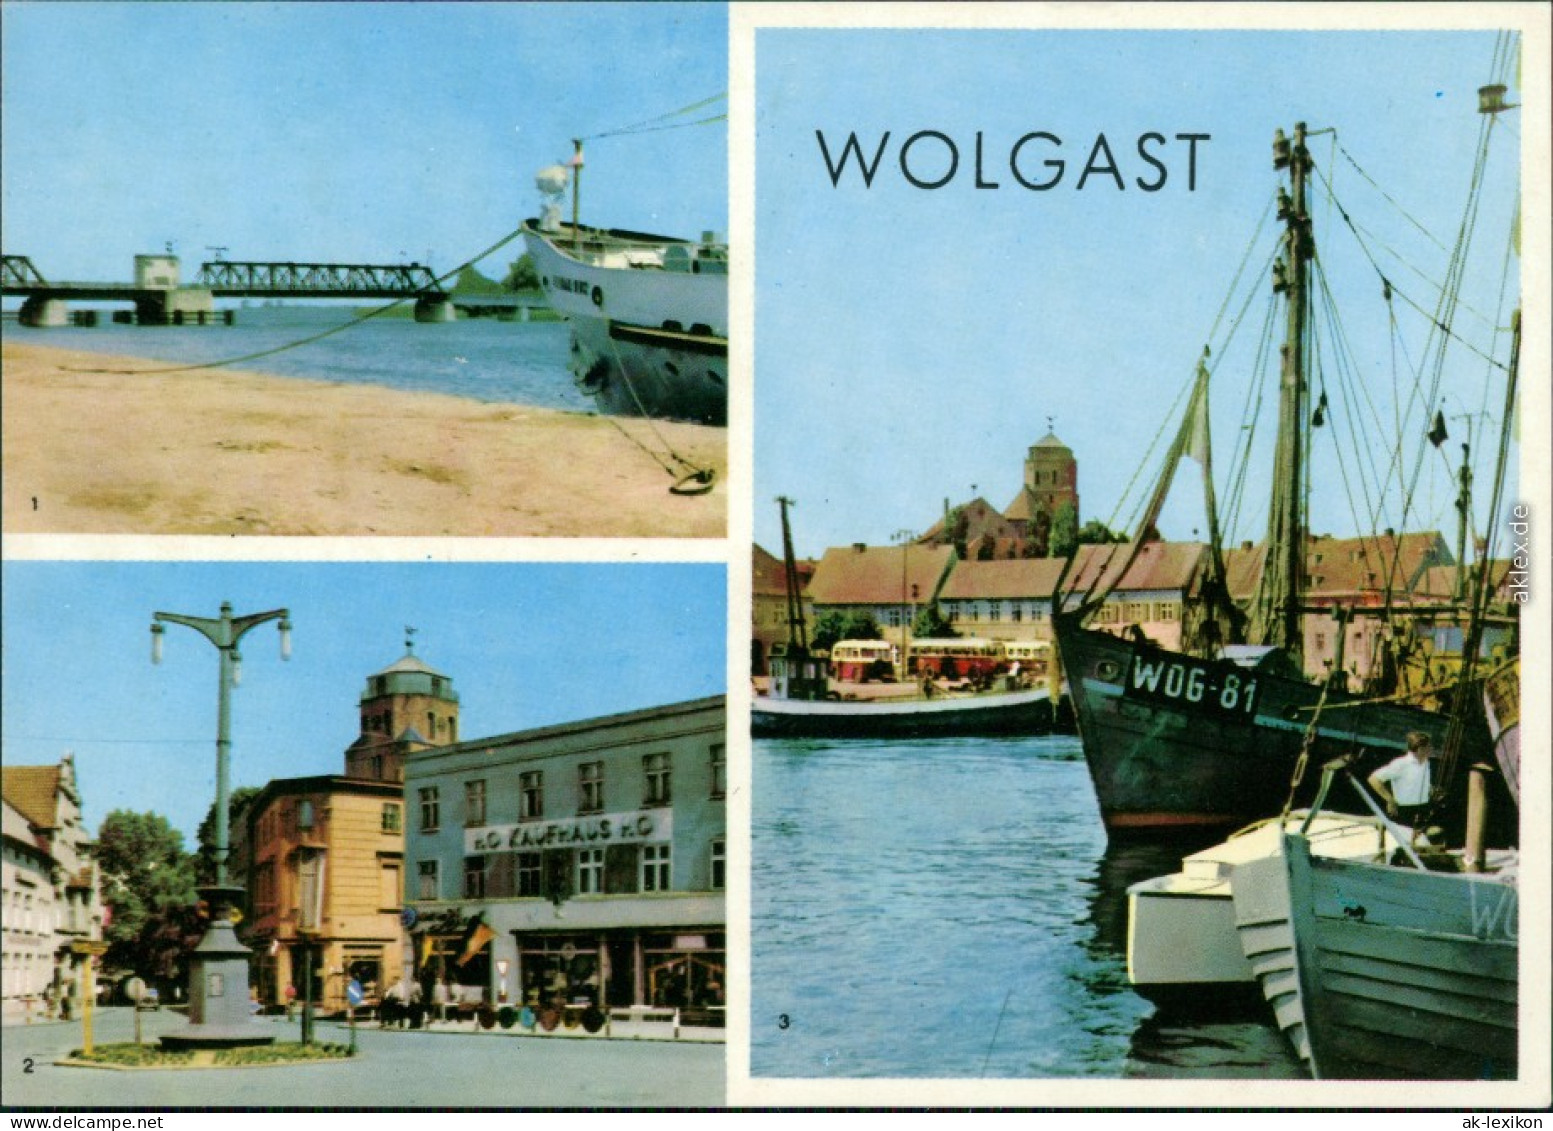 Wolgast Dampferanlegestelle, Platz Der Jugend, Hafen 1969 - Wolgast